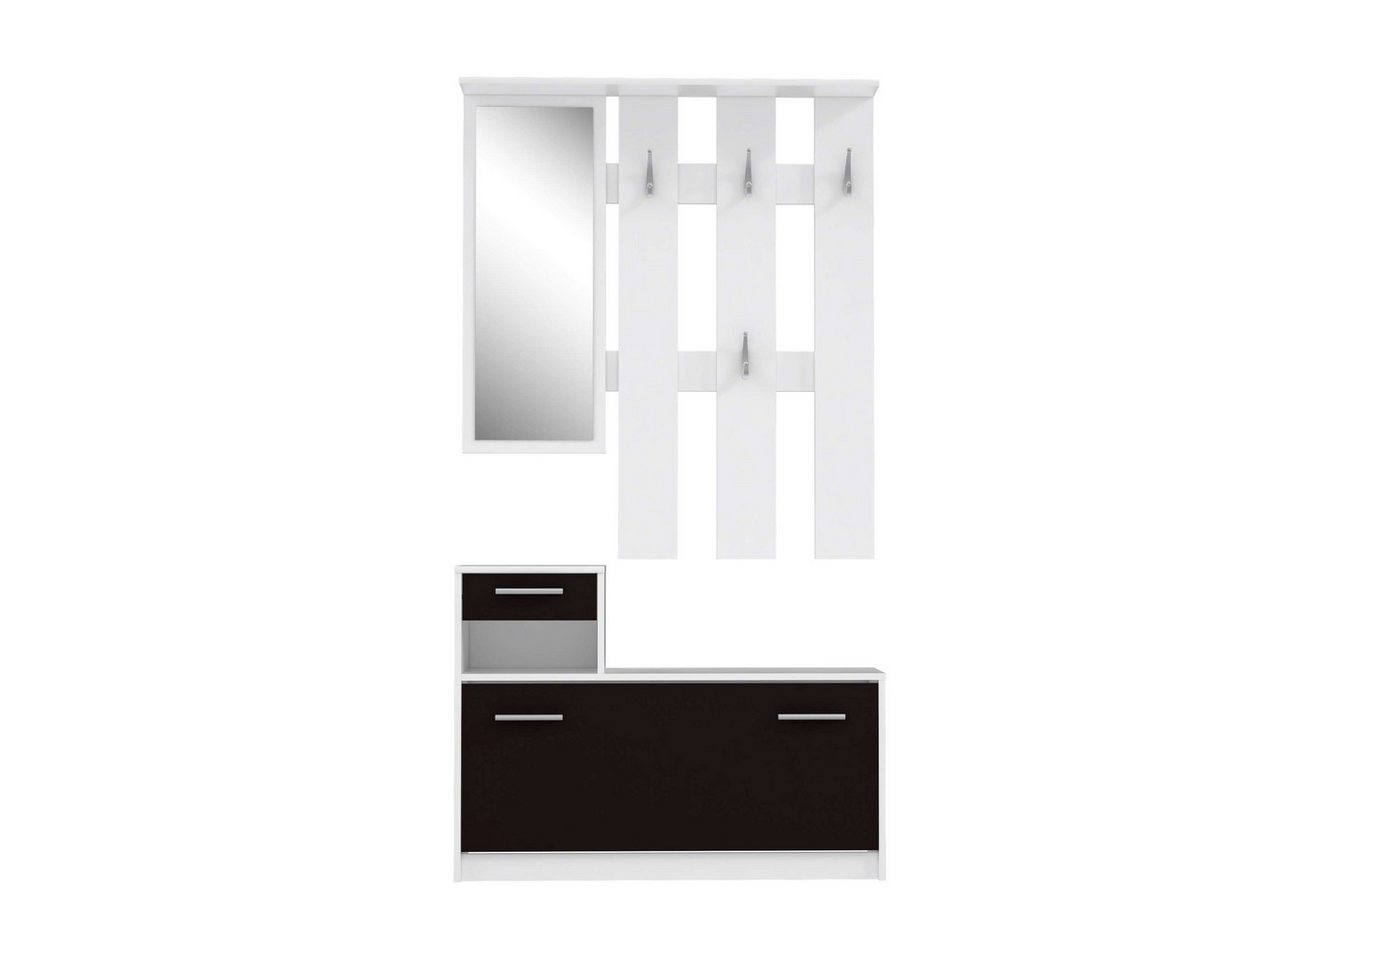 Stylefy Garderobenpaneel Horavio (Paneel, Garderobenpaneel), mit 1 Tür, 1 Schublade, 1 offenem Fach, Spiegel, 4 Kleiderhaken von Stylefy